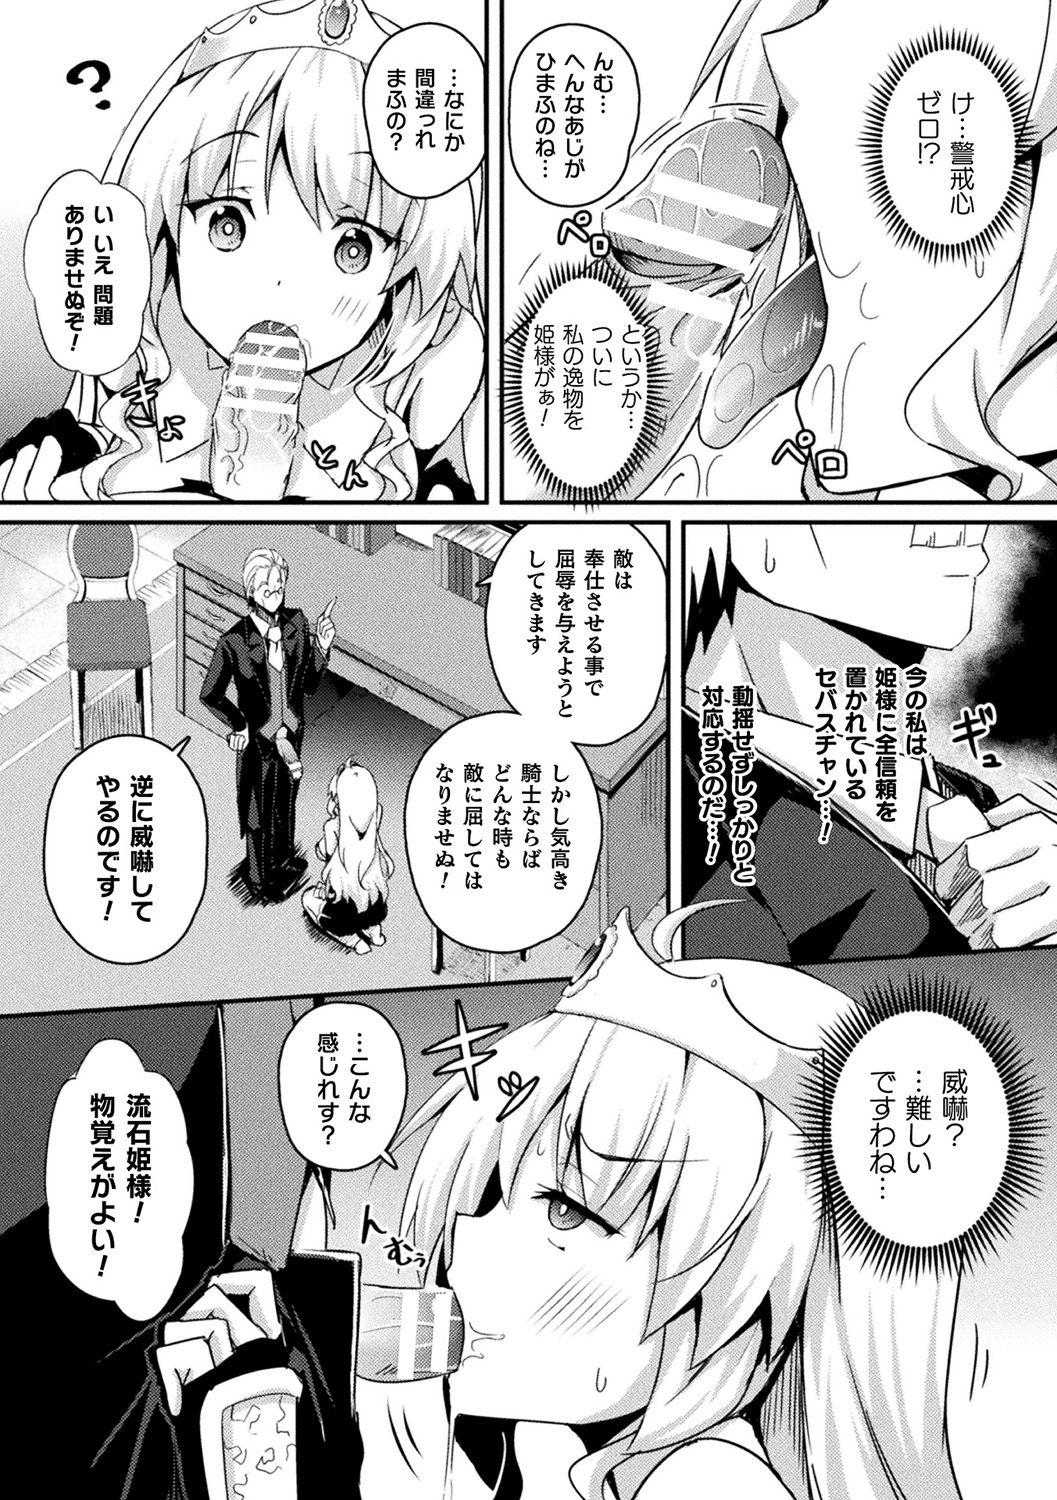 [Anthology] Bessatsu Comic Unreal Ponkotsu Fantasy Heroine H ~Doji o Funde Gyakuten Saretari Ero Trap ni Hamattari!?~ Vol. 2 [Digital] 6